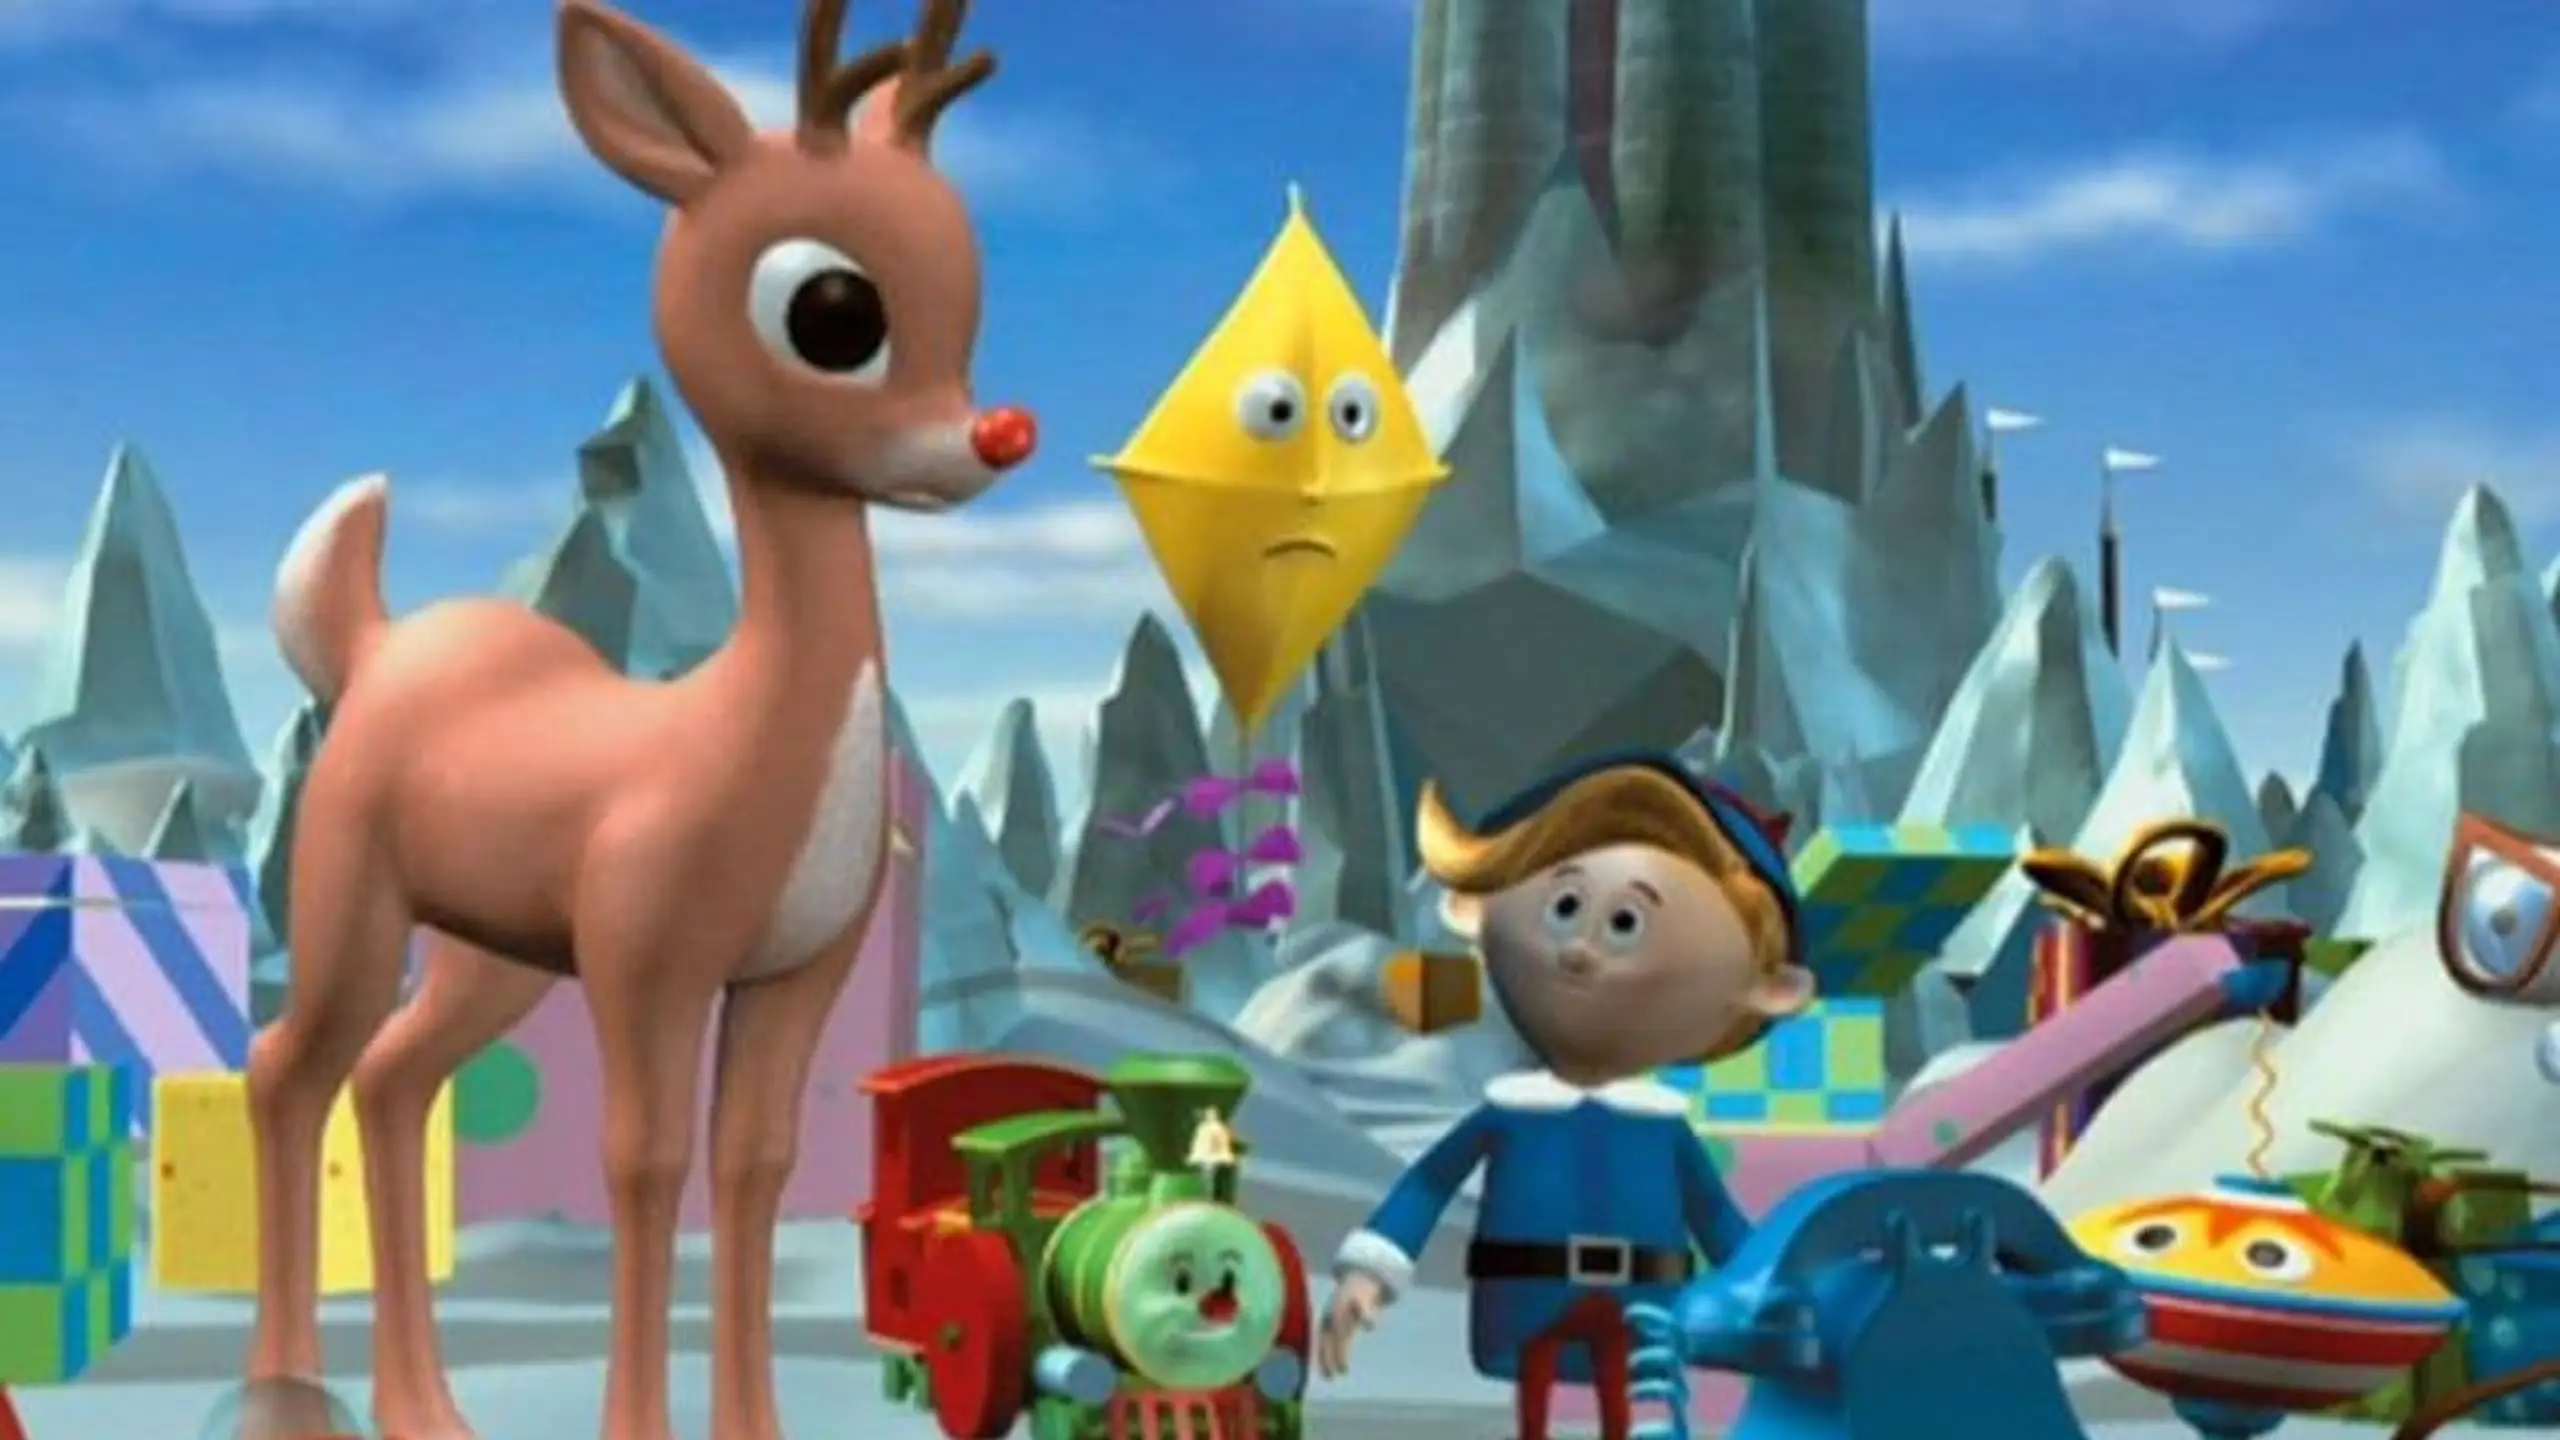 Rudolph mit der roten Nase (Film)